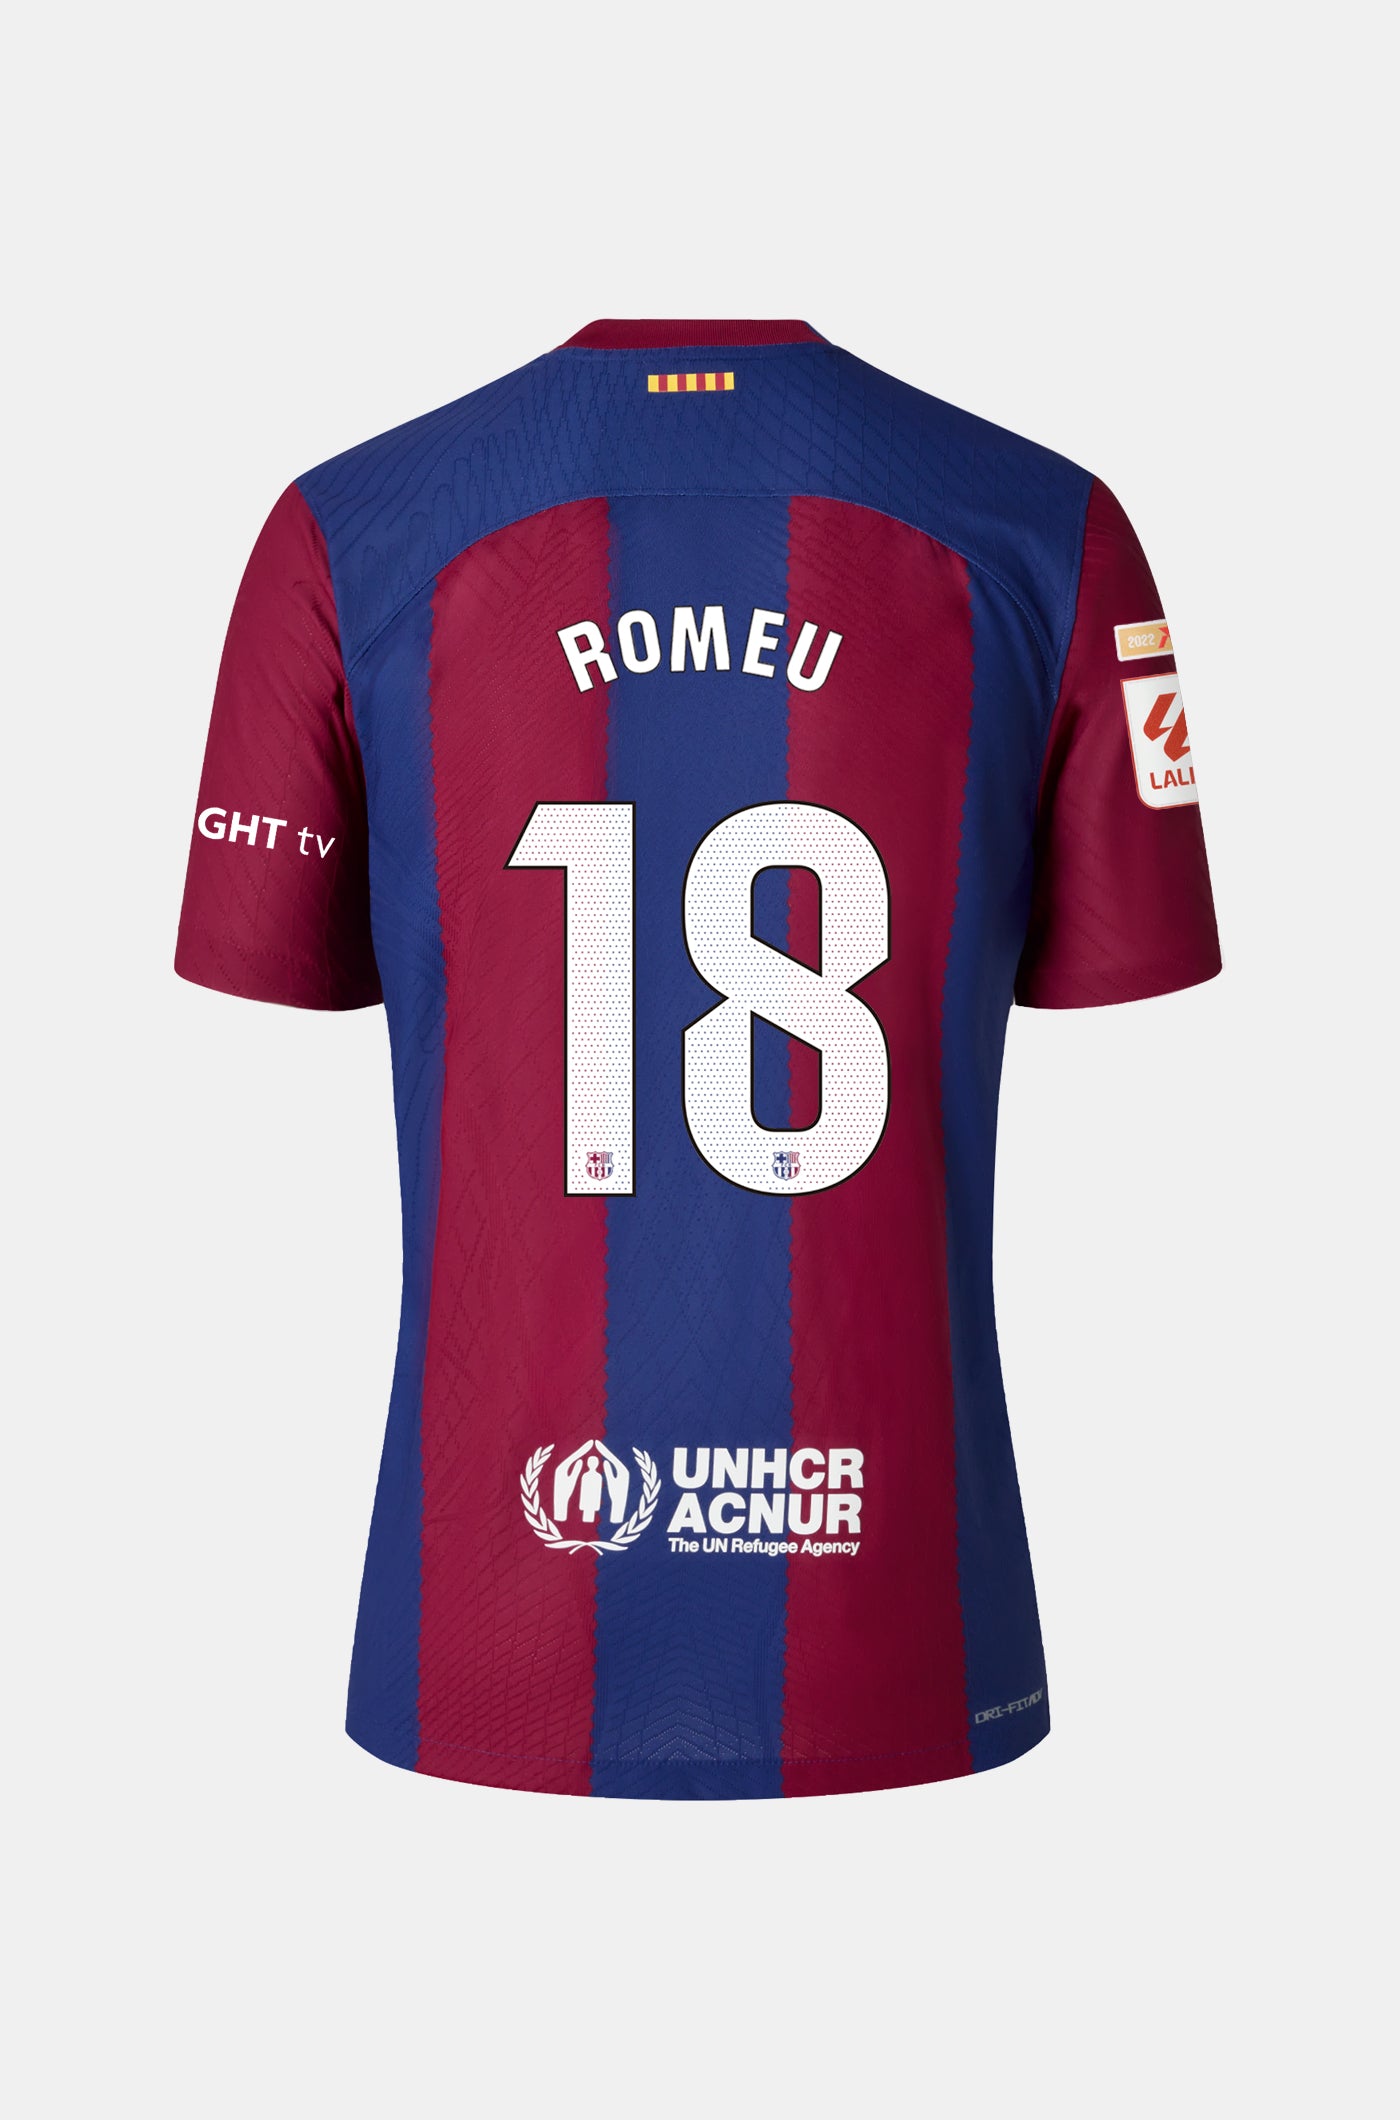 LFP FC Barcelona Home Shirt 23/24 Player's Edition - Women - ROMEU